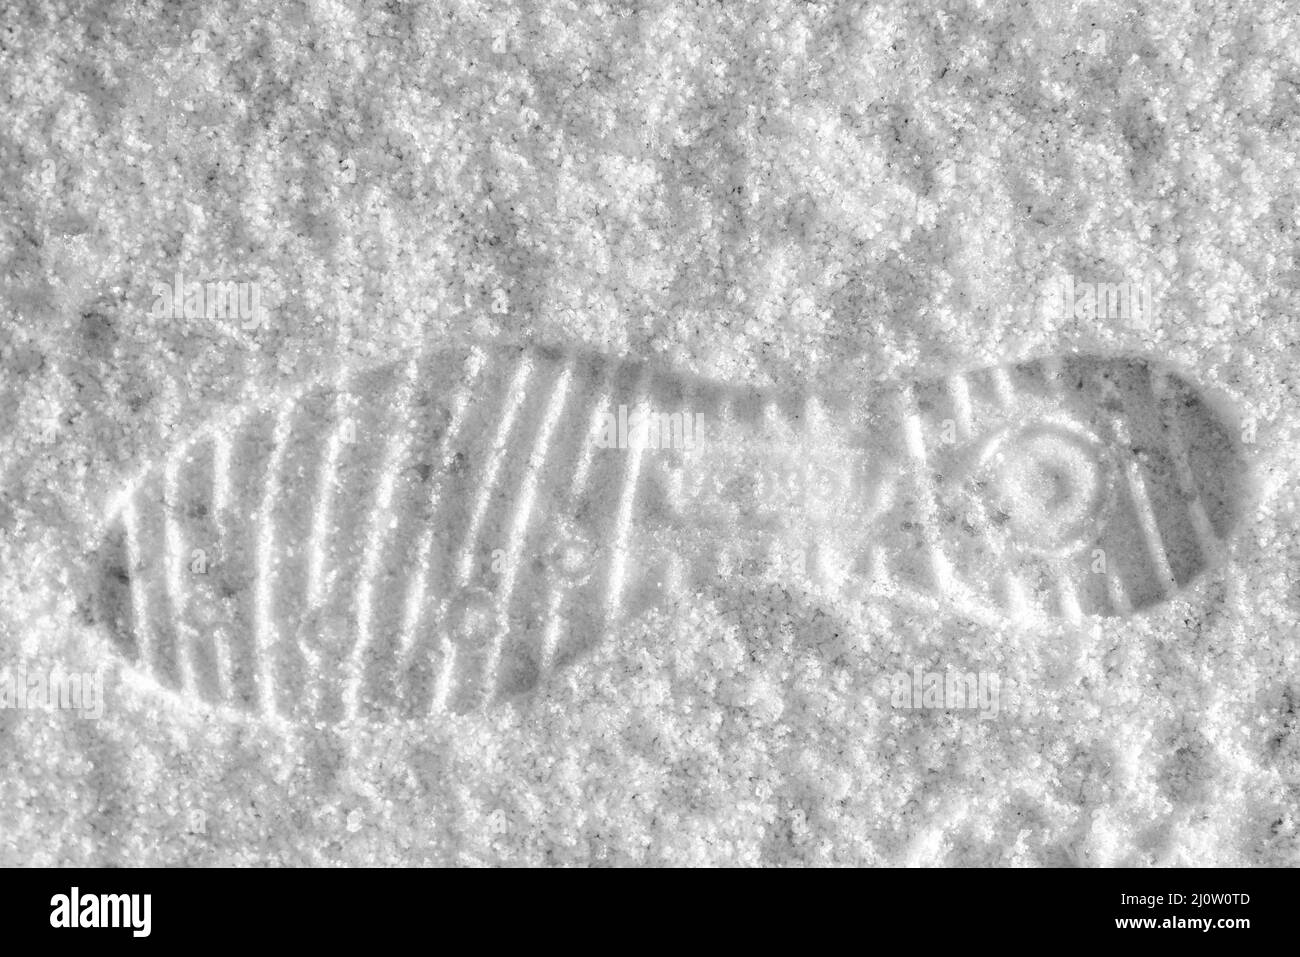 Estampado de zapatillas en la nieve: Pasos blancos y negros Foto de stock